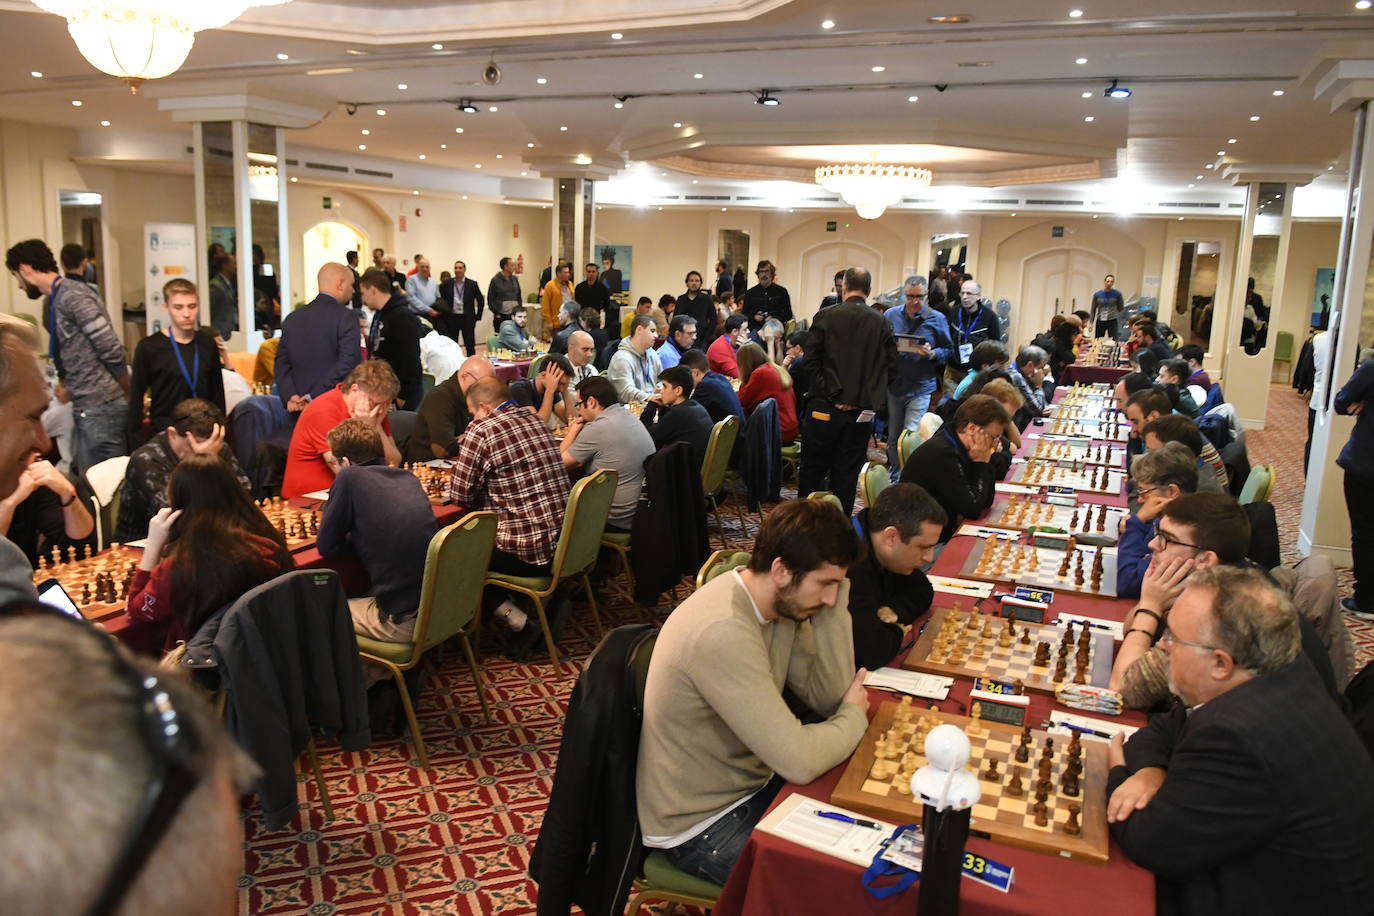 Kárpov, invitado al Campeonato de España de ajedrez que se disputa en Marbella. 